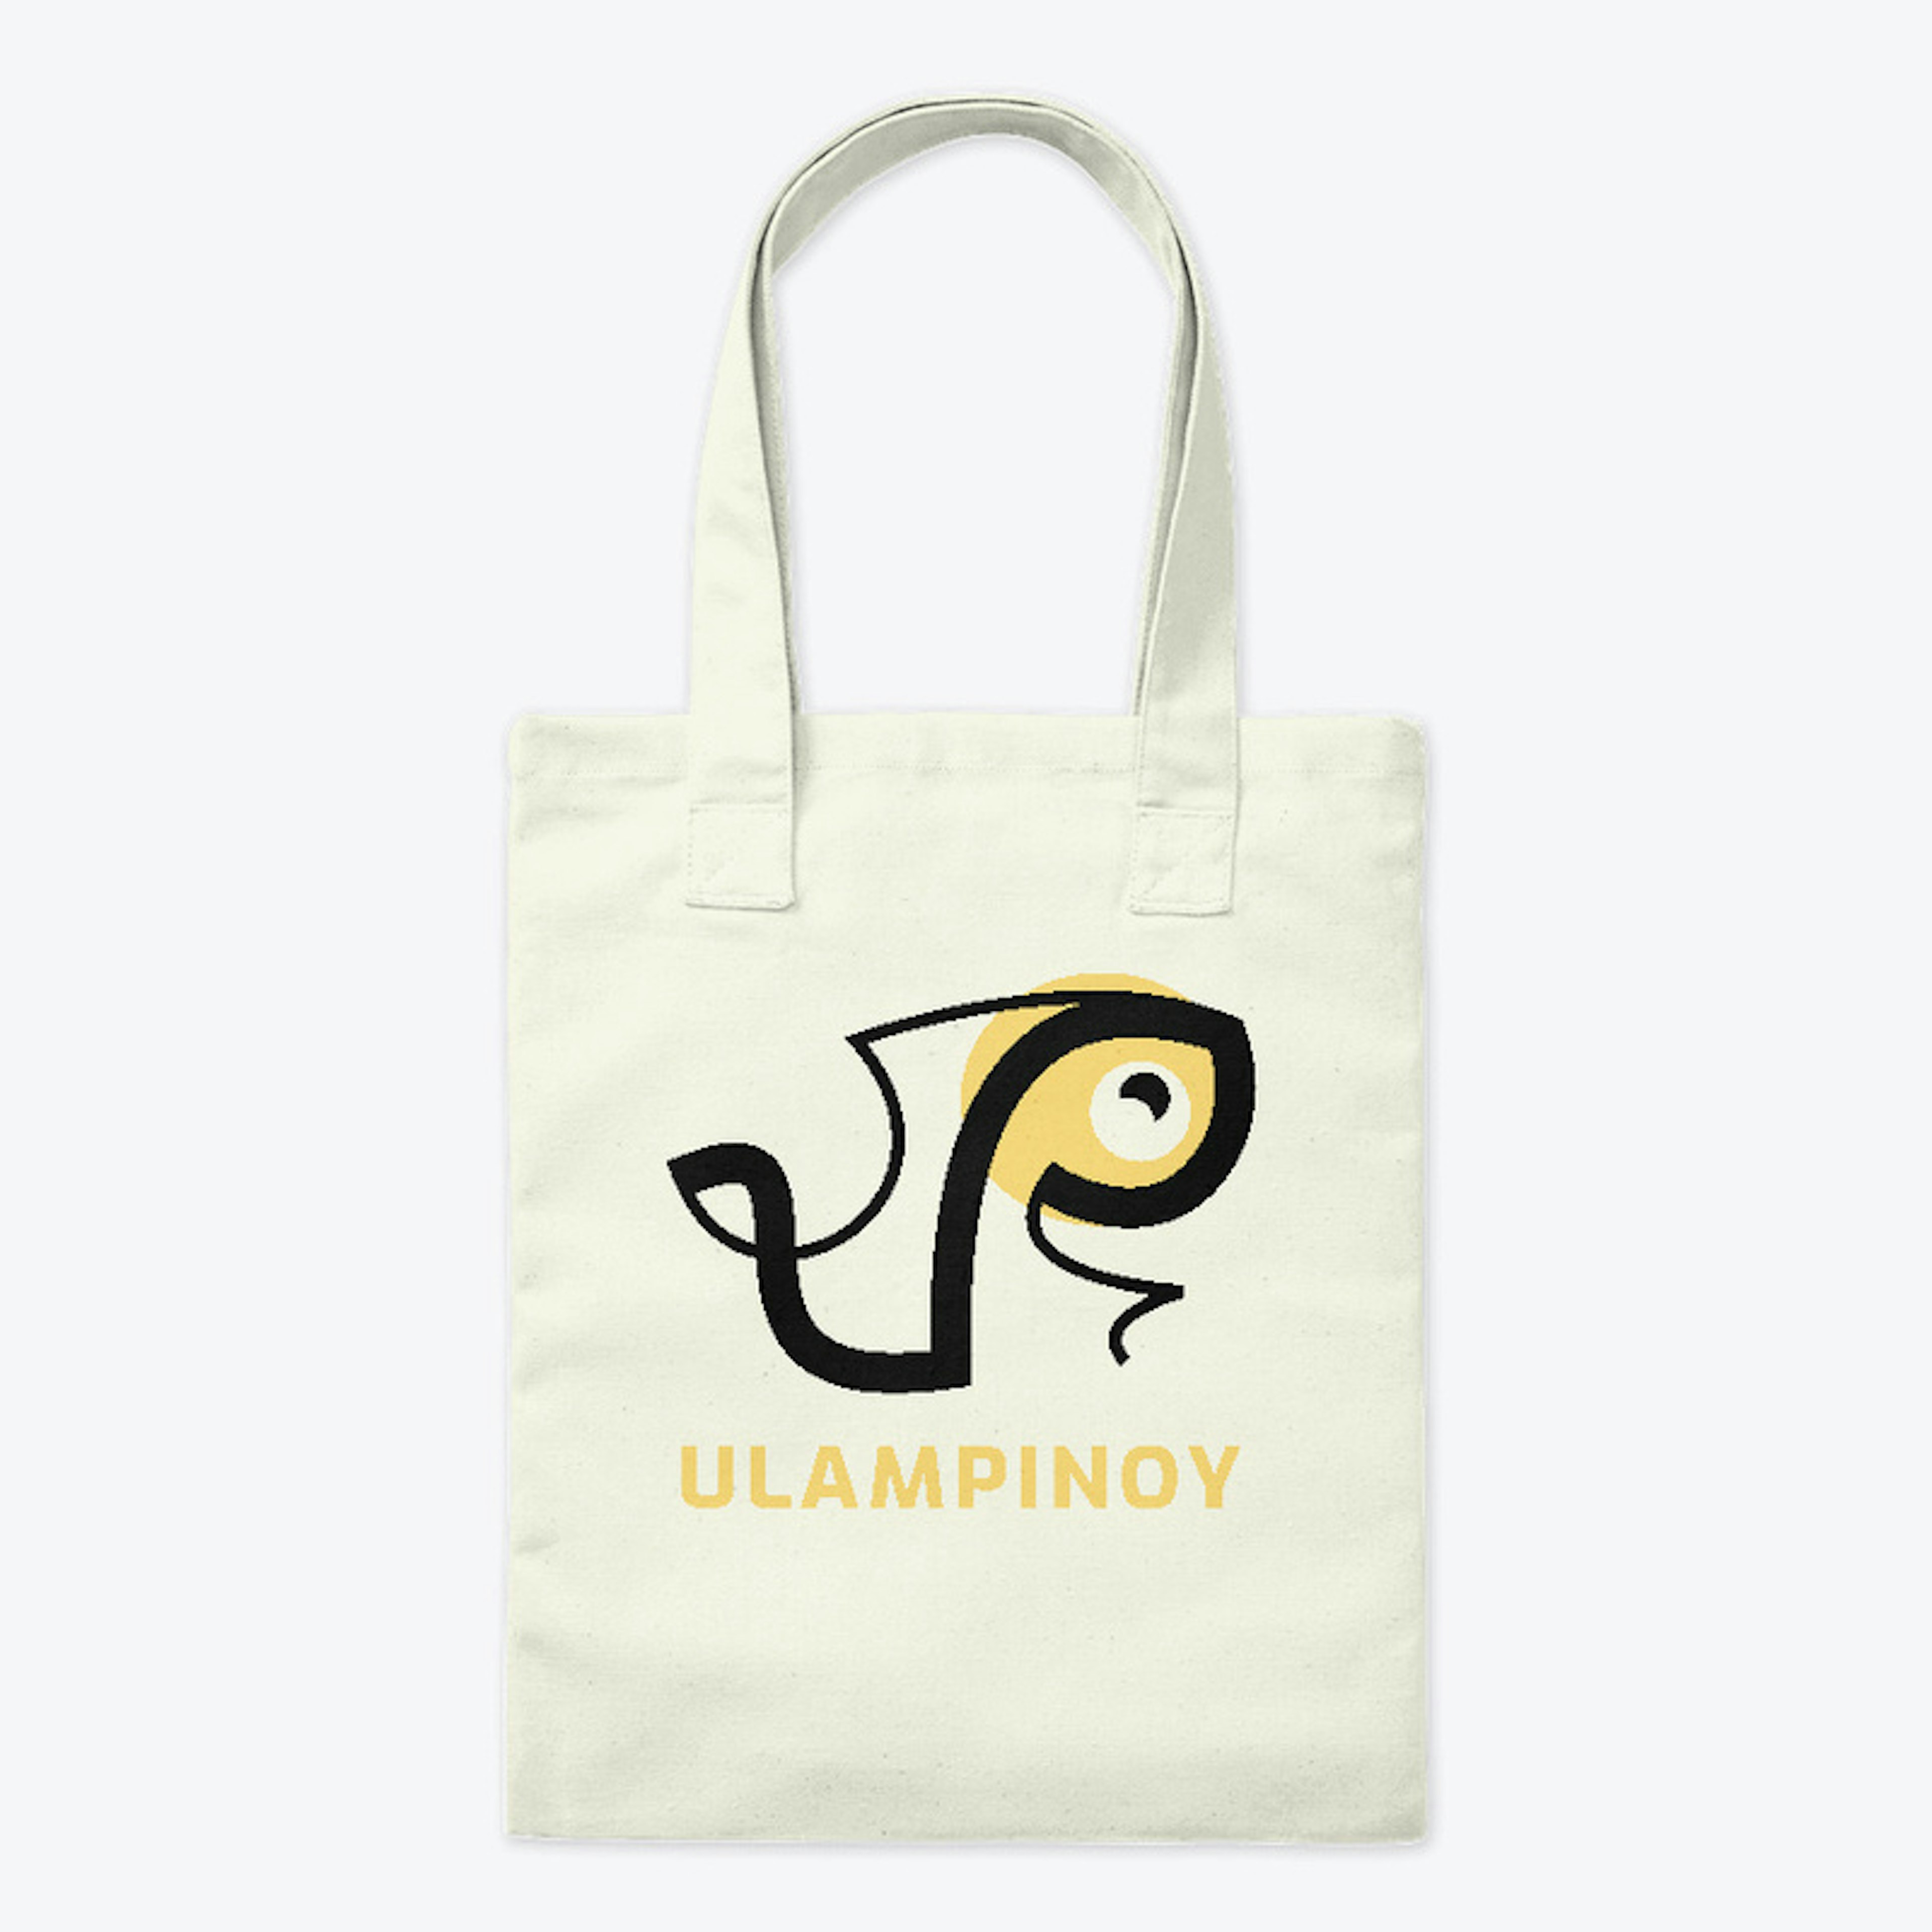 Ulampinoy Tote Bag